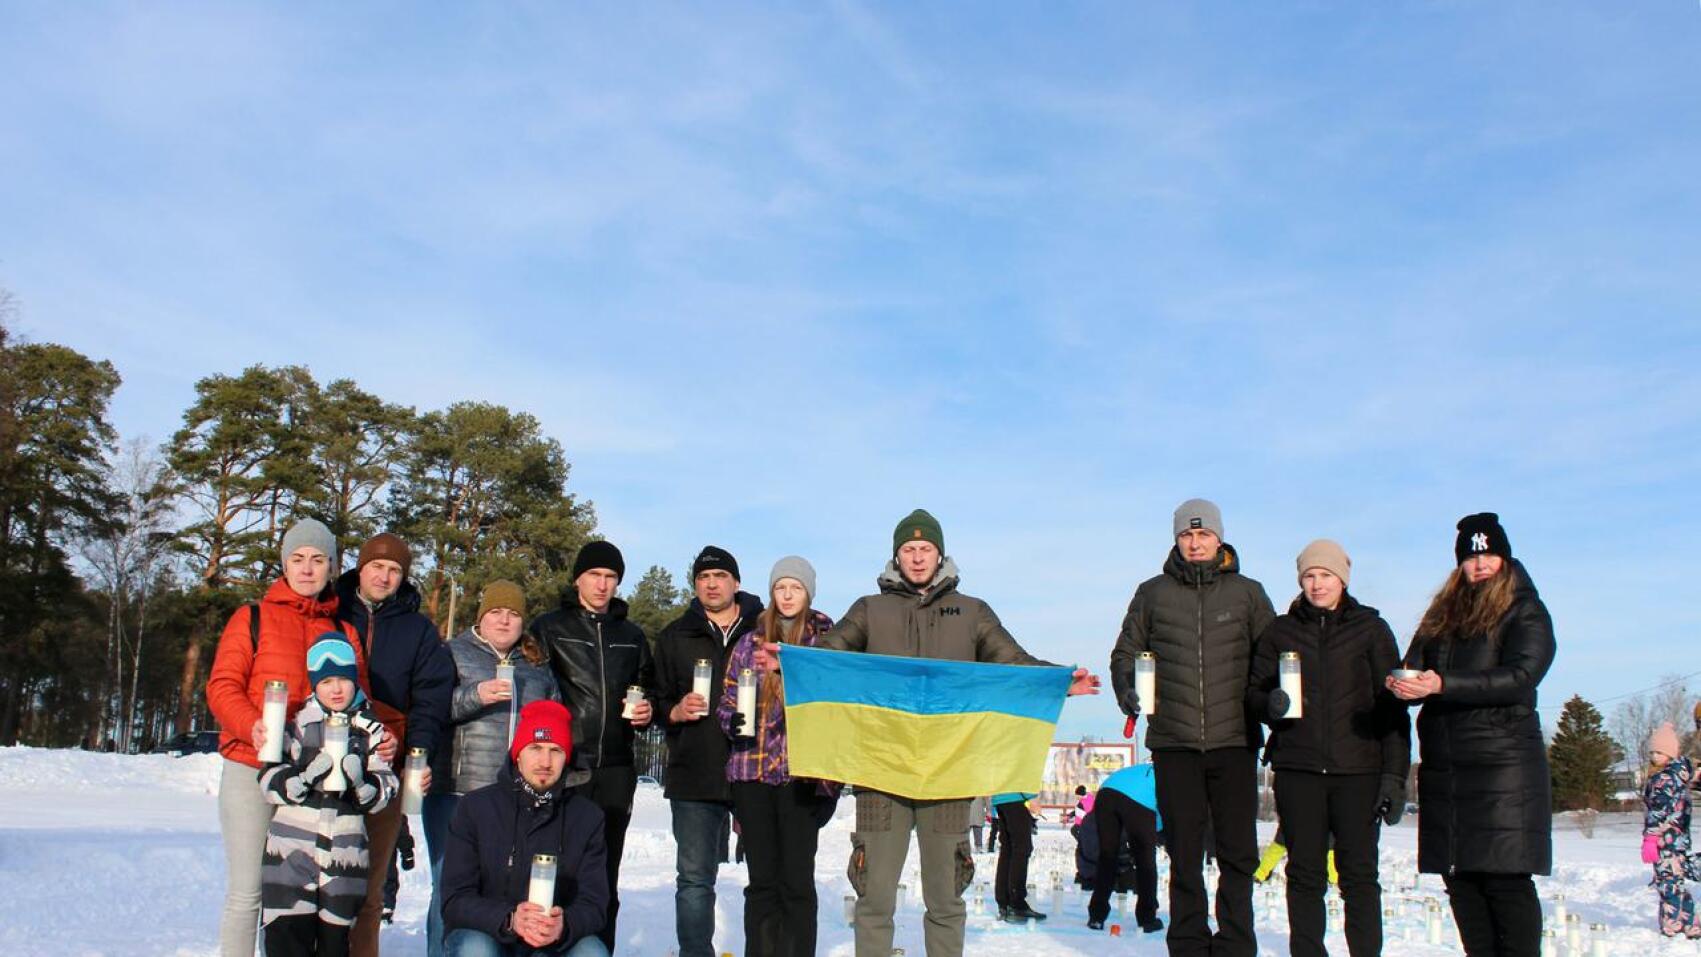 Iso joukko ukrainalaisia Himangalta, Kannuksesta ja Kalajoelta oli mukana We stand with Ukraine -tapahtumassa. Kynttilöiden sytyttäminen osoitti, että ihmisten ajatukset ovat Ukrainan kansan tukena. Lippua pitelemässä Yevhenii Hrabko.